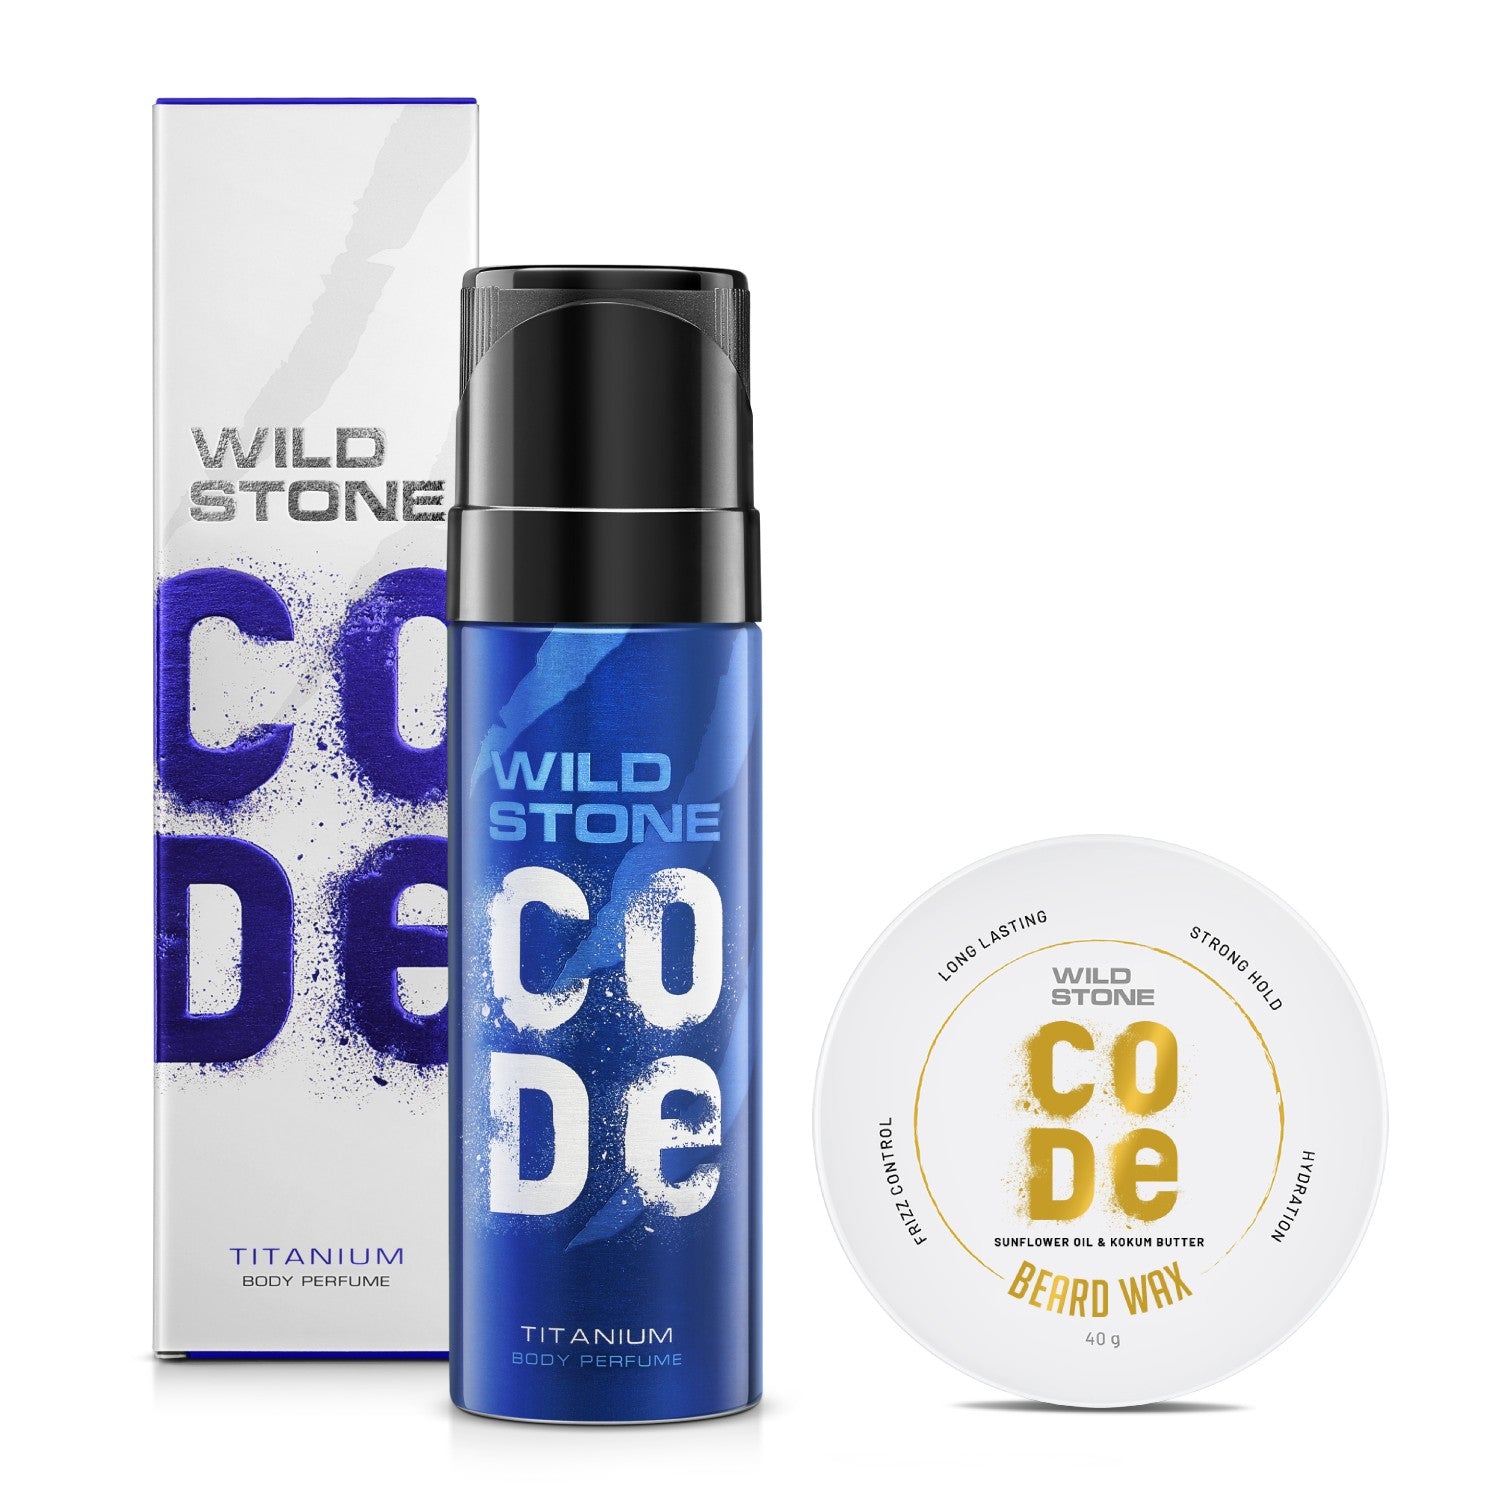 Wild Stone CODE Titanium Body Perfume 120 ml & Beard Wax 40 gm, Pack of 2